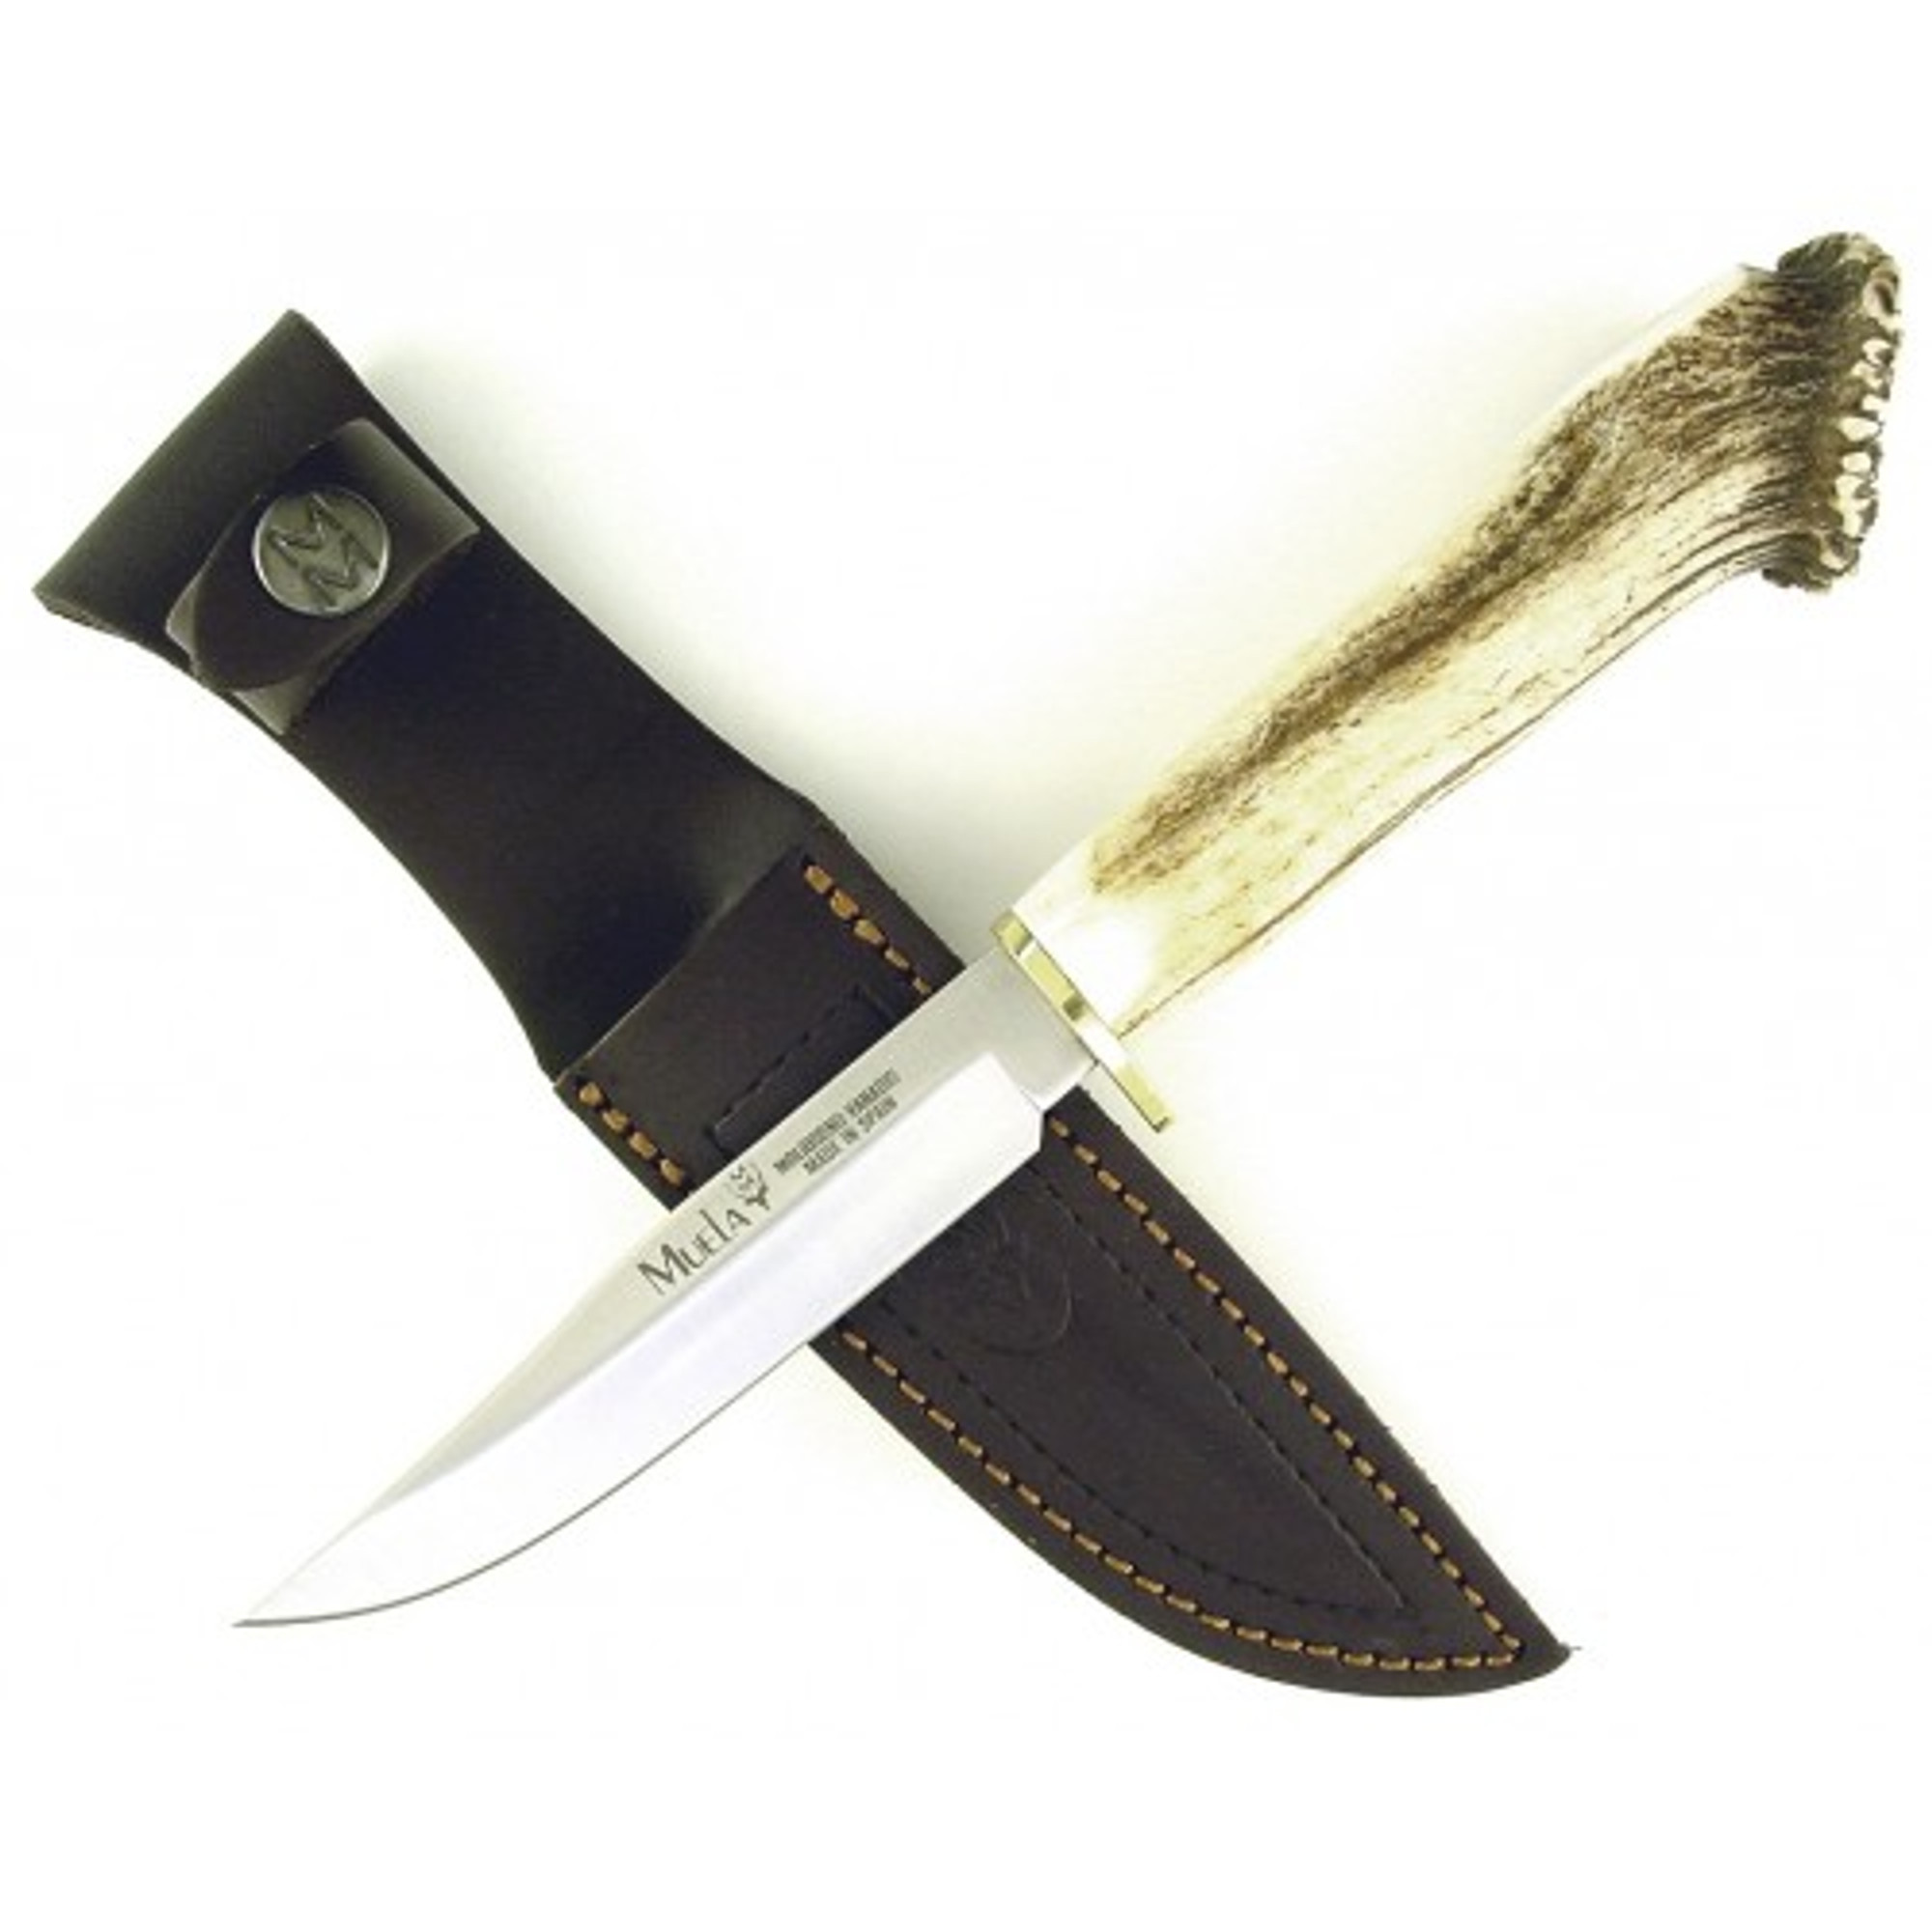 MUELA GRED-12S, X50CrMoV15, 4-5/8" Fixed Blade Hunting Knife, Crown Deer Horn Handle